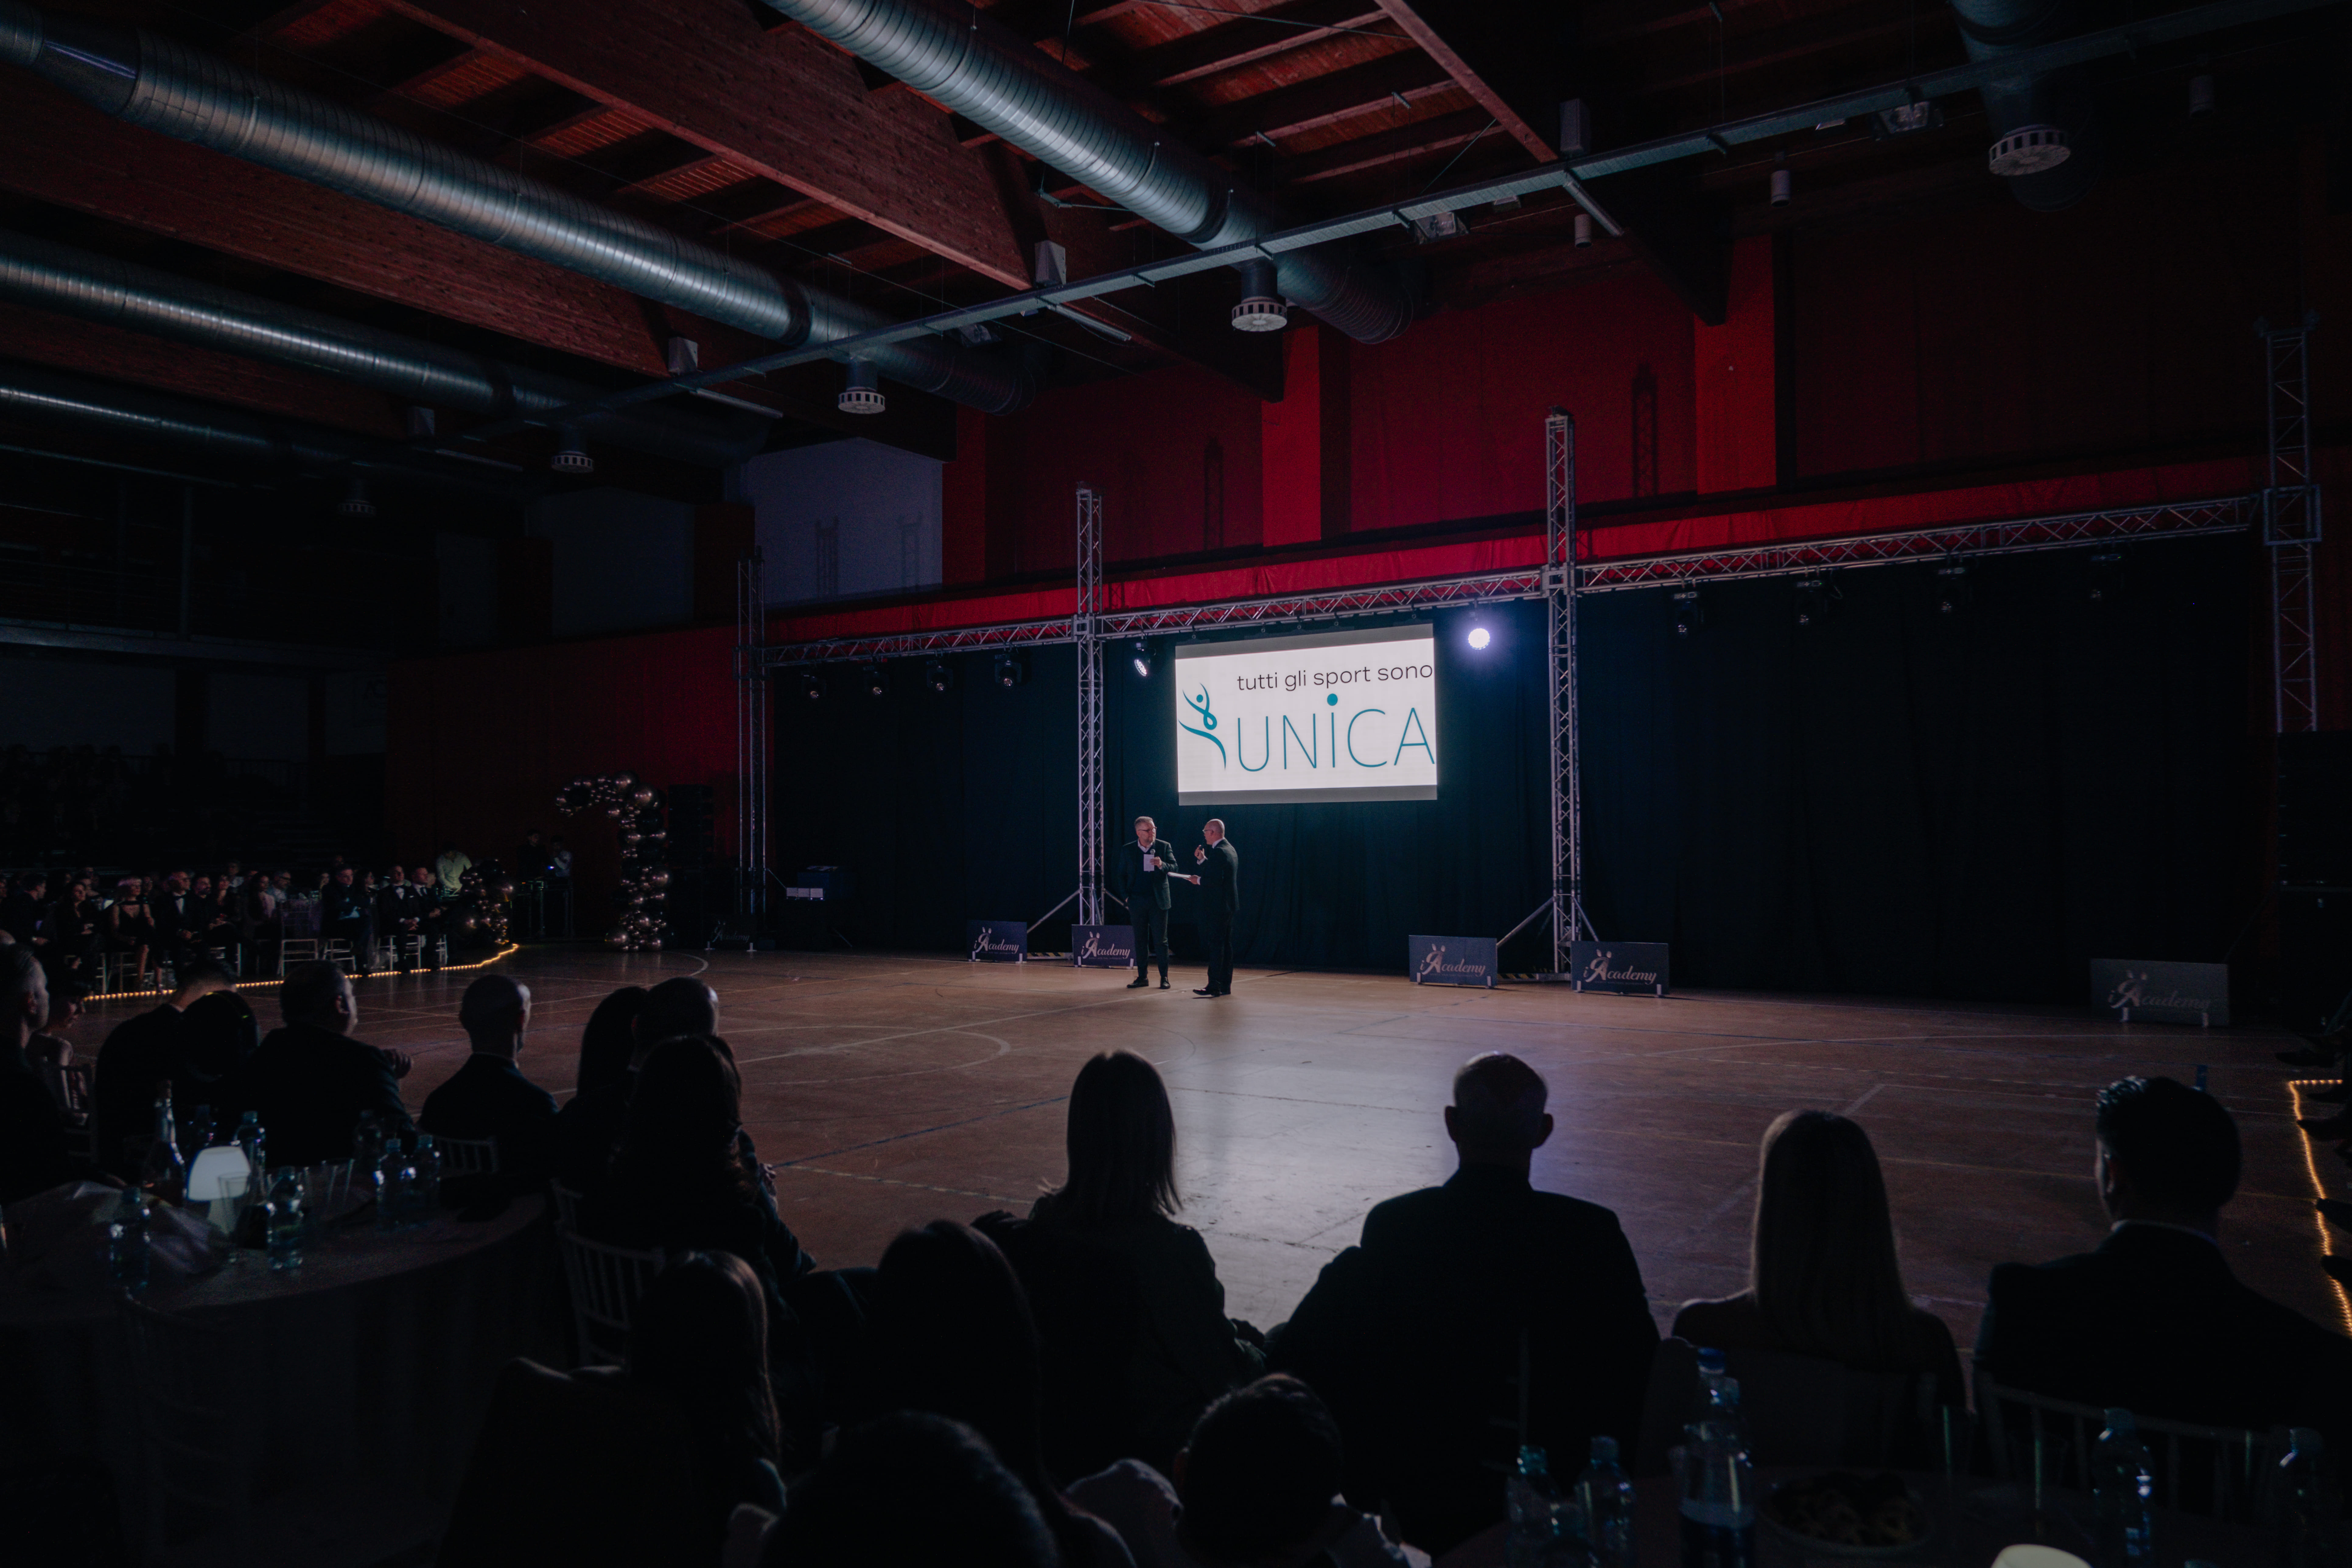 L'immagine ritrae due persone al centro del palco in un palazzetto: sono il Presidente di Unica e il presentatore della serata di gala. Di fronte a loro il palazzetto dello sport di Pomezia gremito.